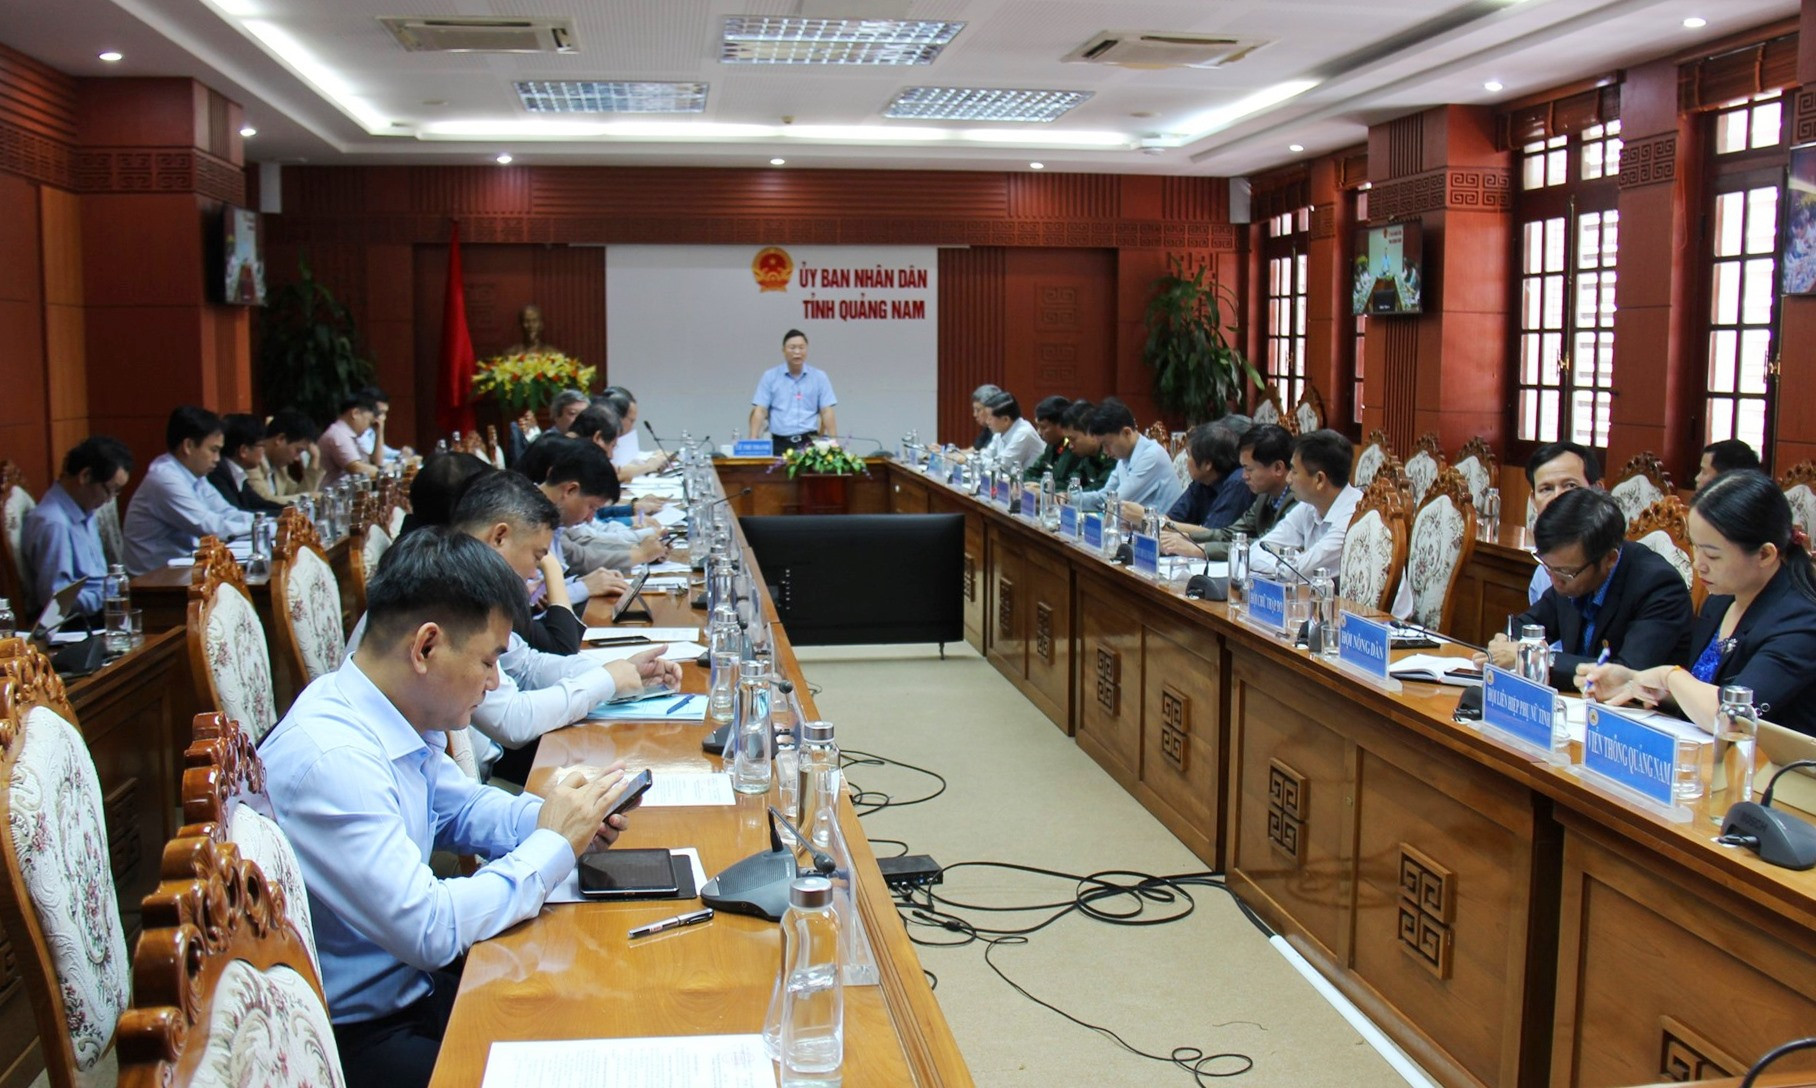 Chủ tịch UBND tỉnh Lê Trí Thanh yêu cầu phải nhanh chóng khôi phục hạ tầng giao thông, điện, viễn thông để phục vụ nhân dân. Ảnh: Đ.Y